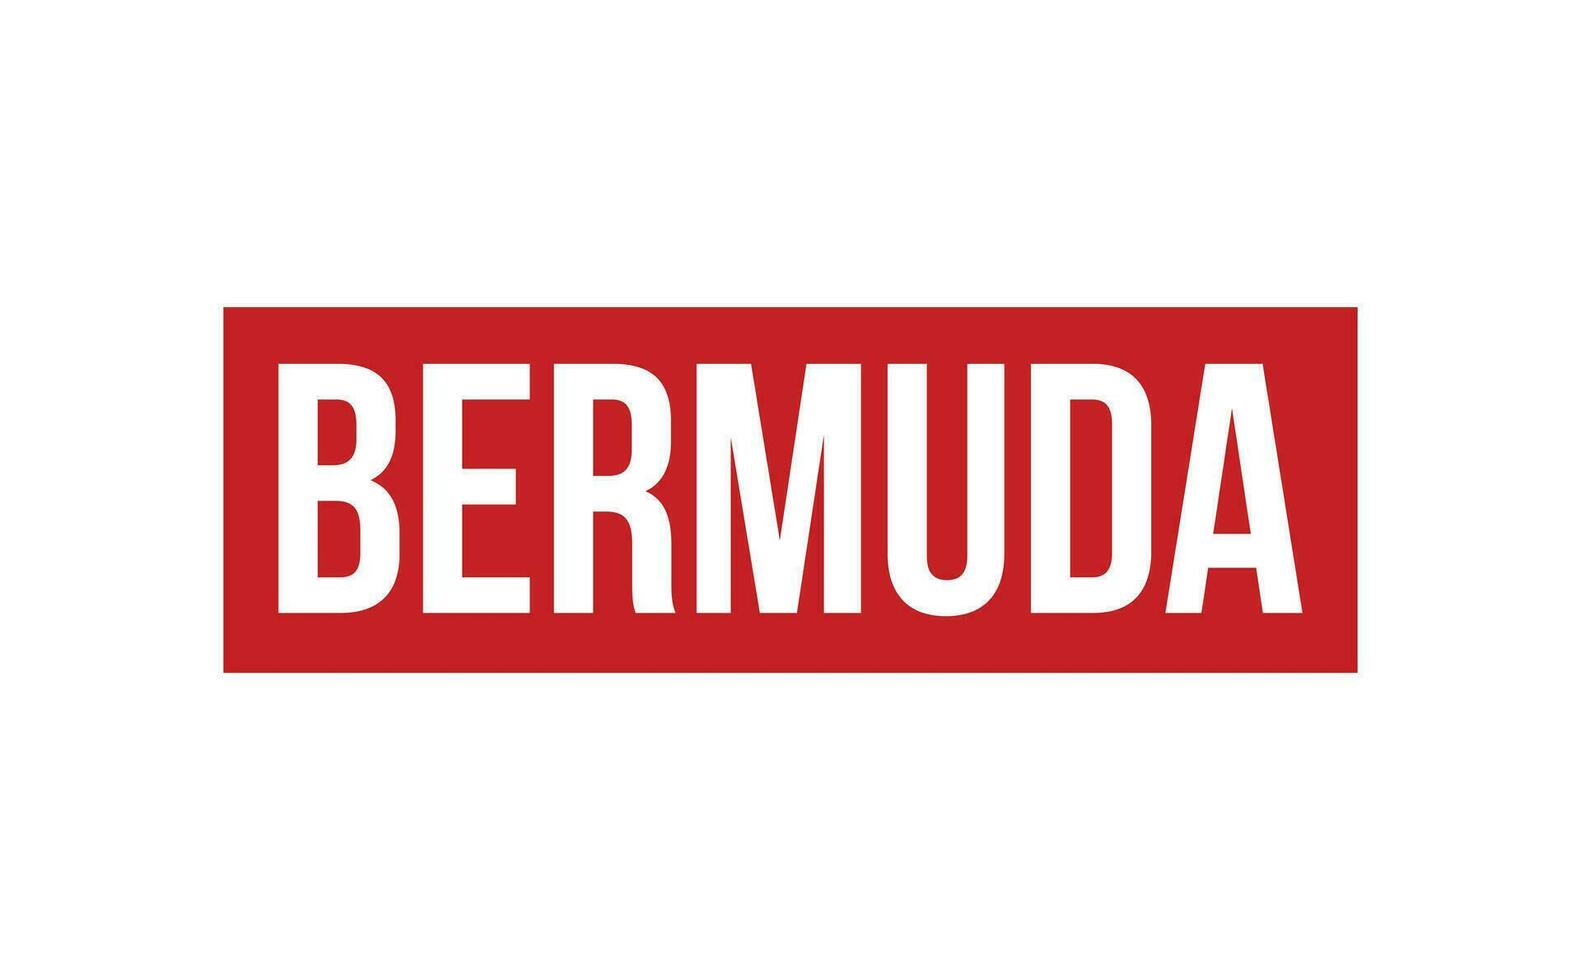 Bermuda Rubber Stamp Seal Vector